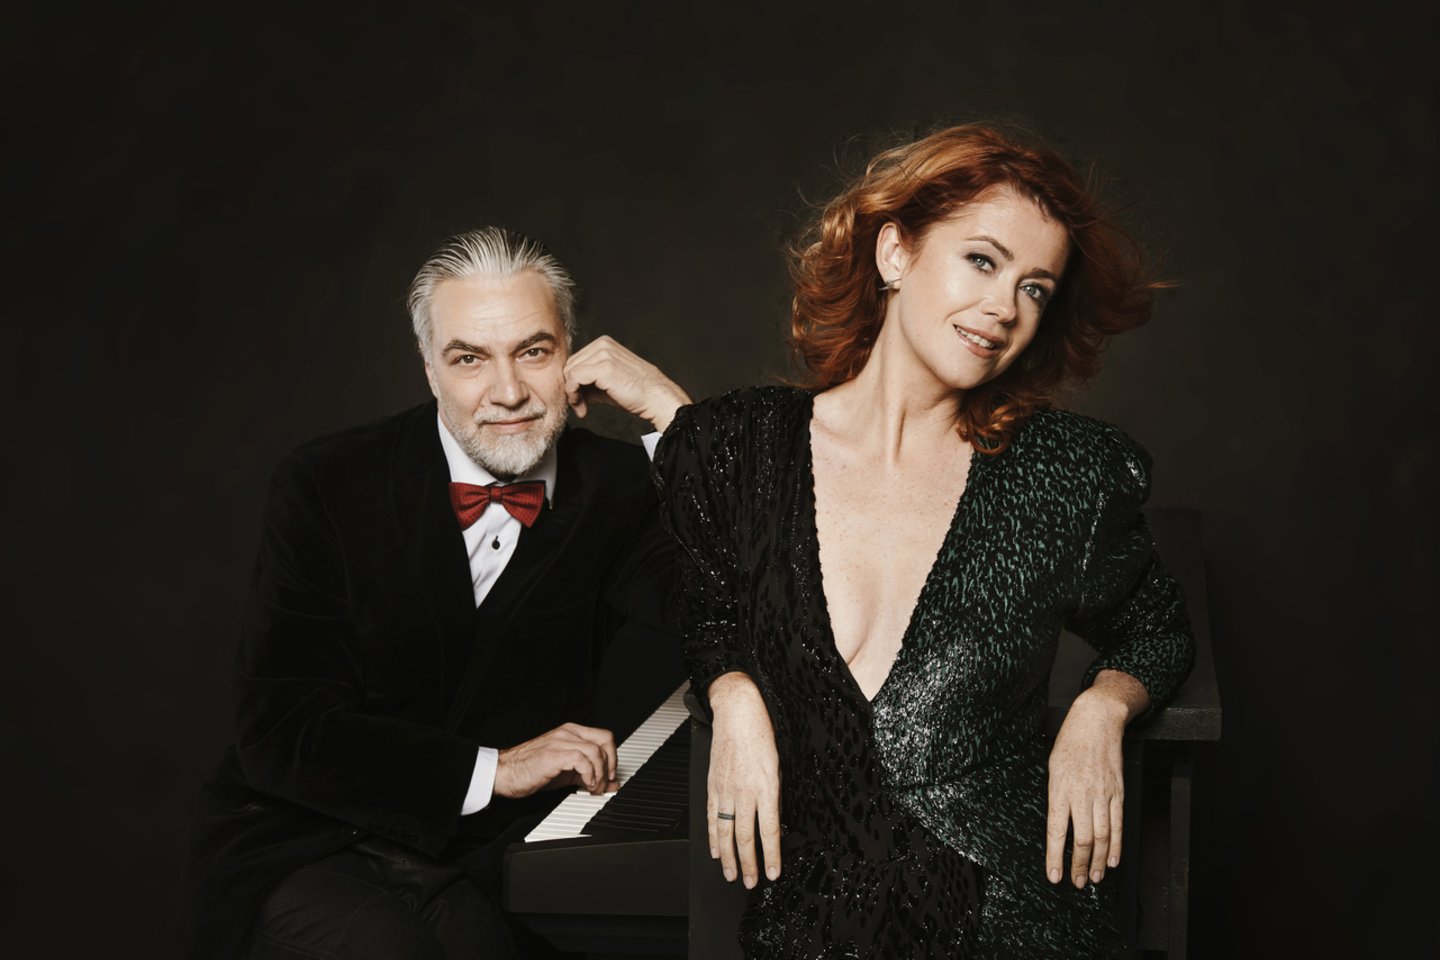  Kalėdinio periodo pradžiai gimsta naujas duetas – Erica Jennings kartu su maestro Petru Geniušu.